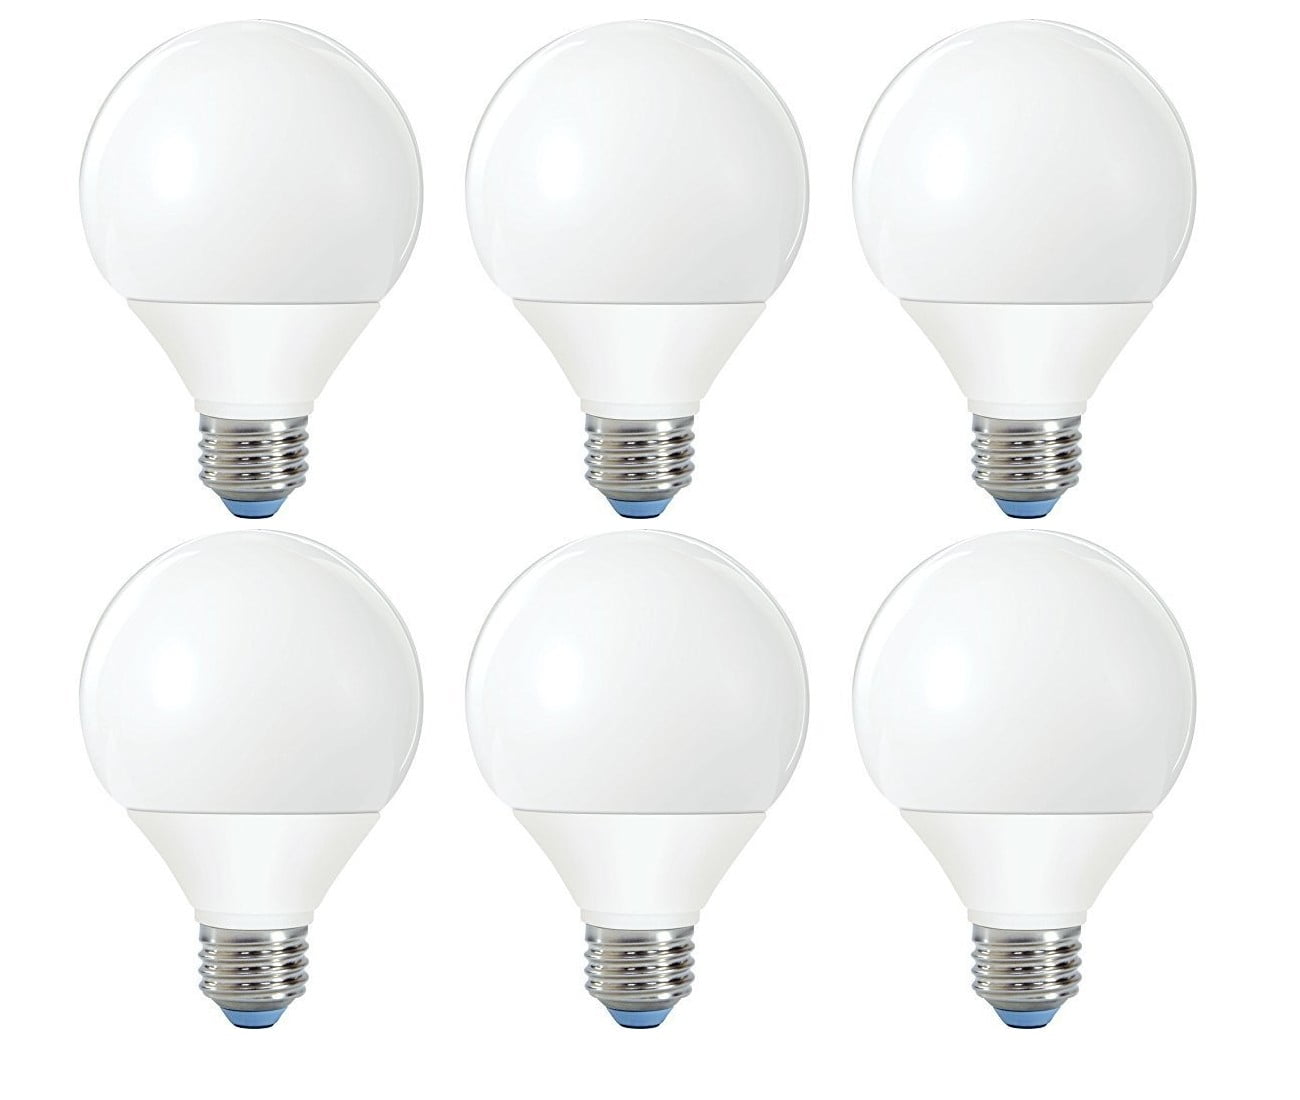 10 TEN SATCO 25 watt Light Bulbs Fits Full Size Scentsy Warmers candelabra 